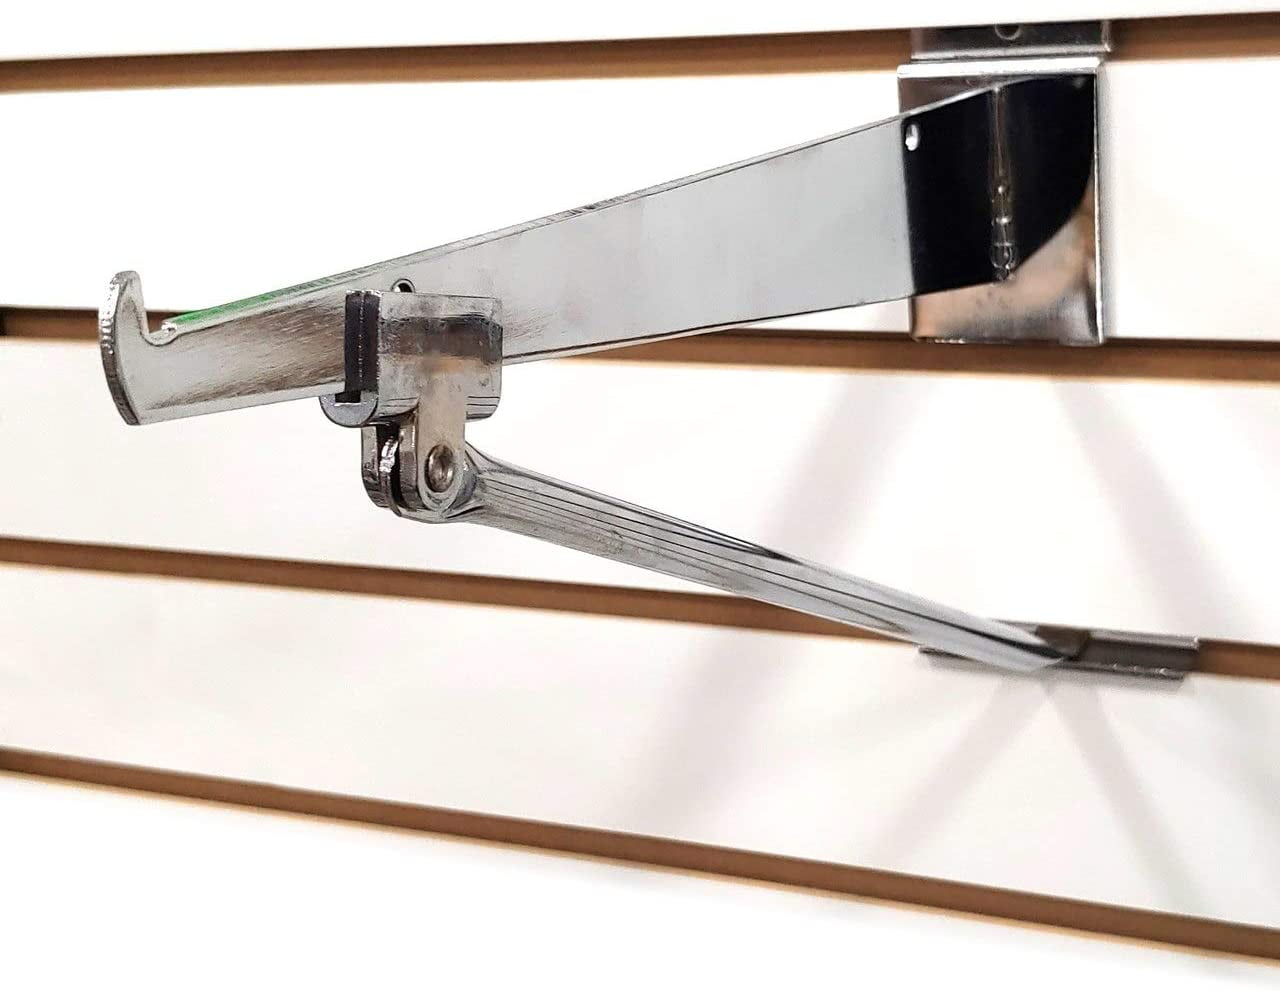 Box of 25 New Chrome Round Hangrail bracket side mount for 1-1/4" 